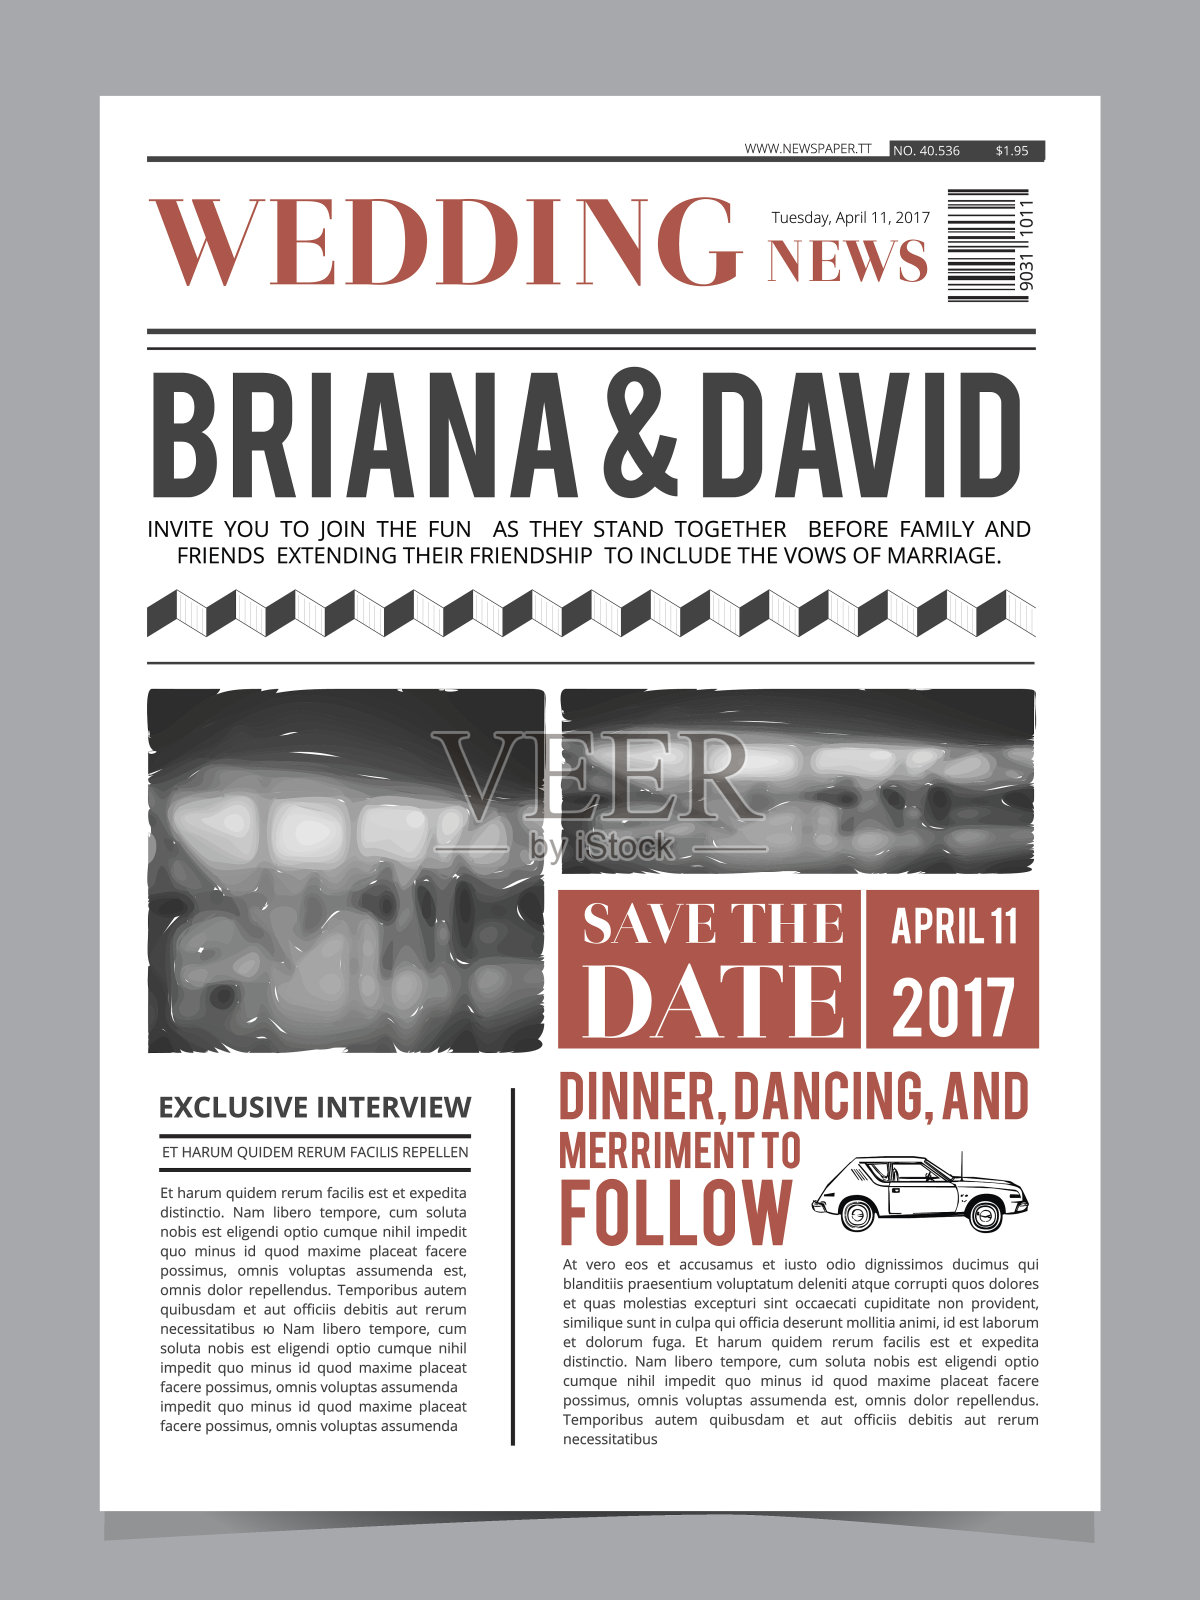 婚礼请帖在报纸头版。设计矢量布局模板设计模板素材